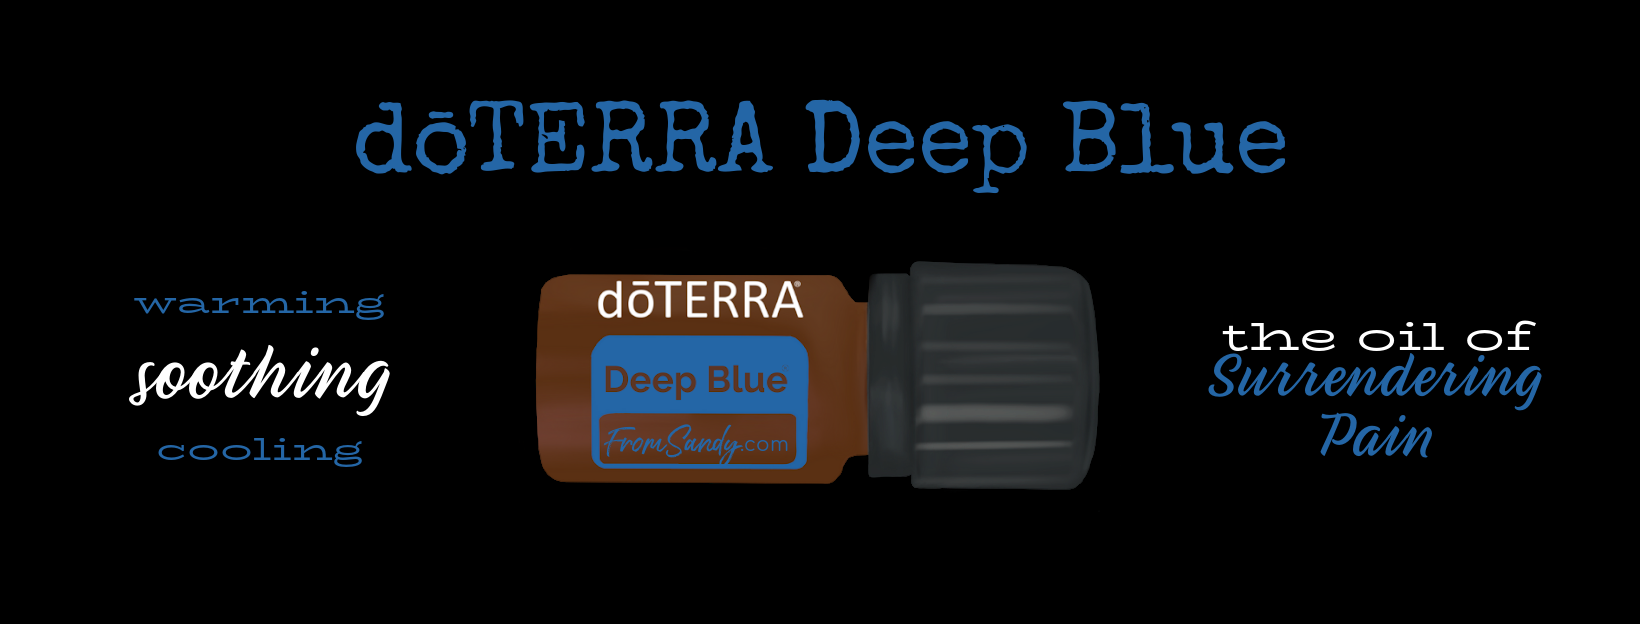 dōTERRA Deep Blue Essential Oil Blend | From Sandy